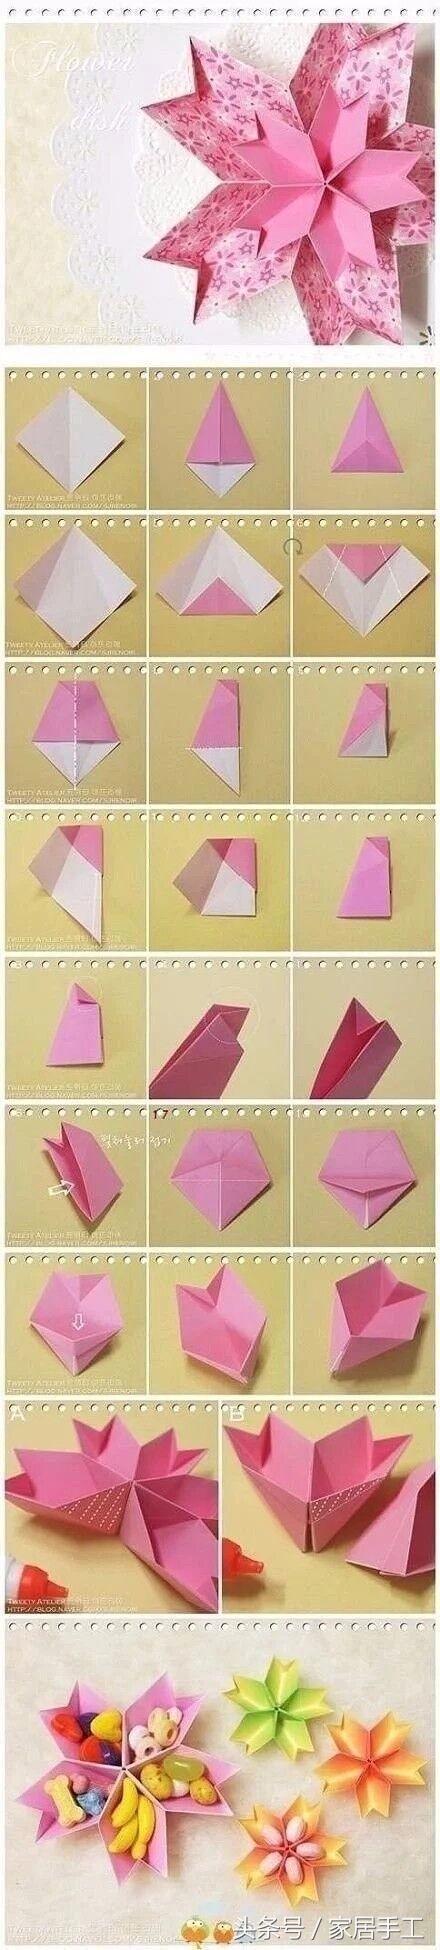 闲暇时的兴趣 简简单单 一些手工折纸剪纸教程